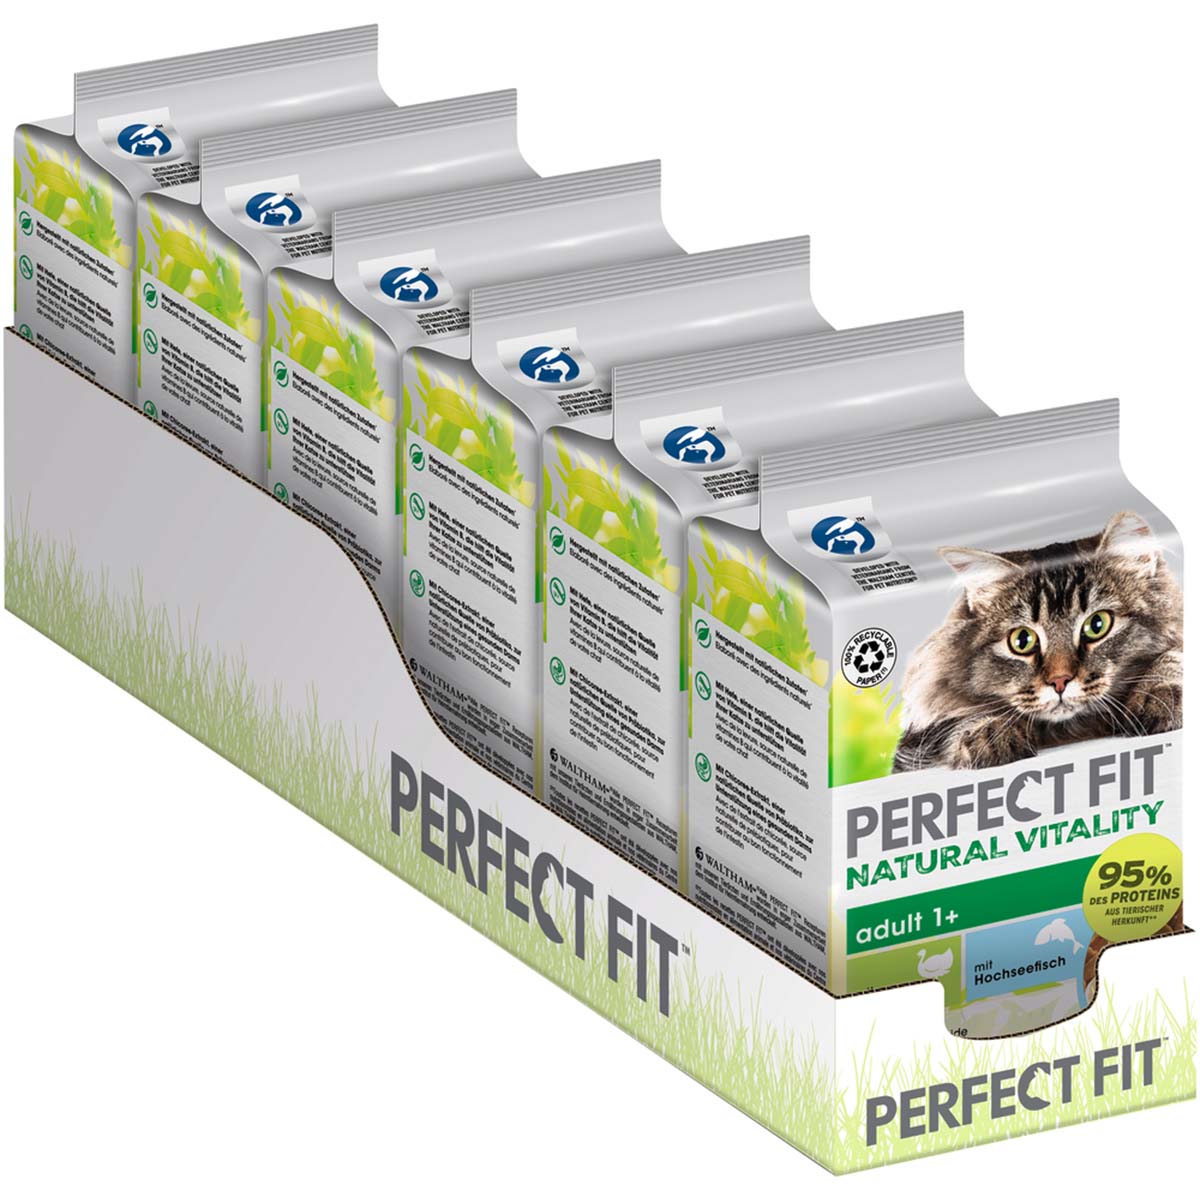 PERFECT FIT Katze Natural Vitality Adult 1+ mit Truthahn und Hochseefisch 6x50g von Perfect Fit